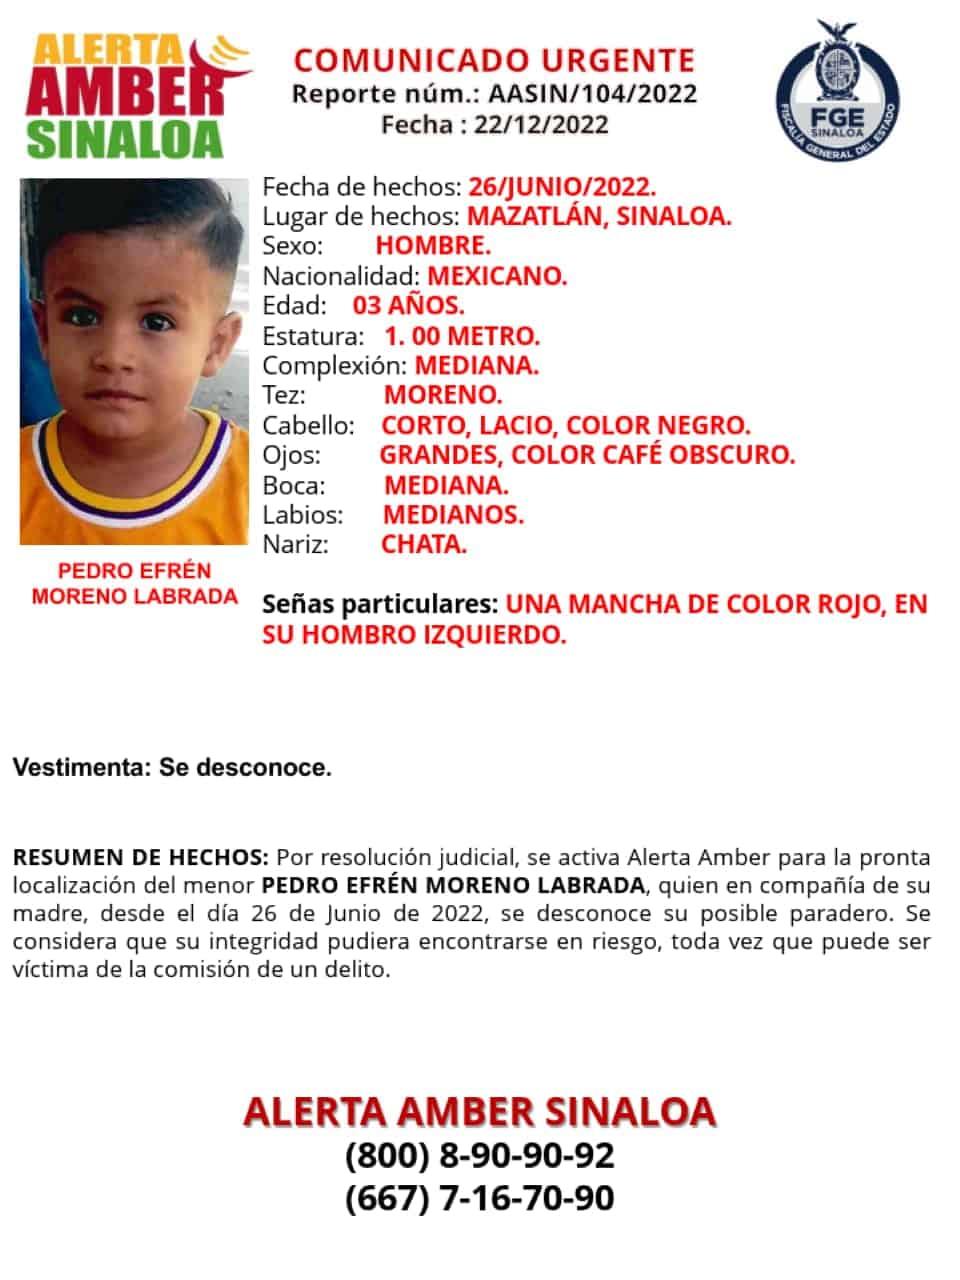 Fiscalía activa la Alerta Amber en busca del pequeño Pedro Efrén, de solo 3 años